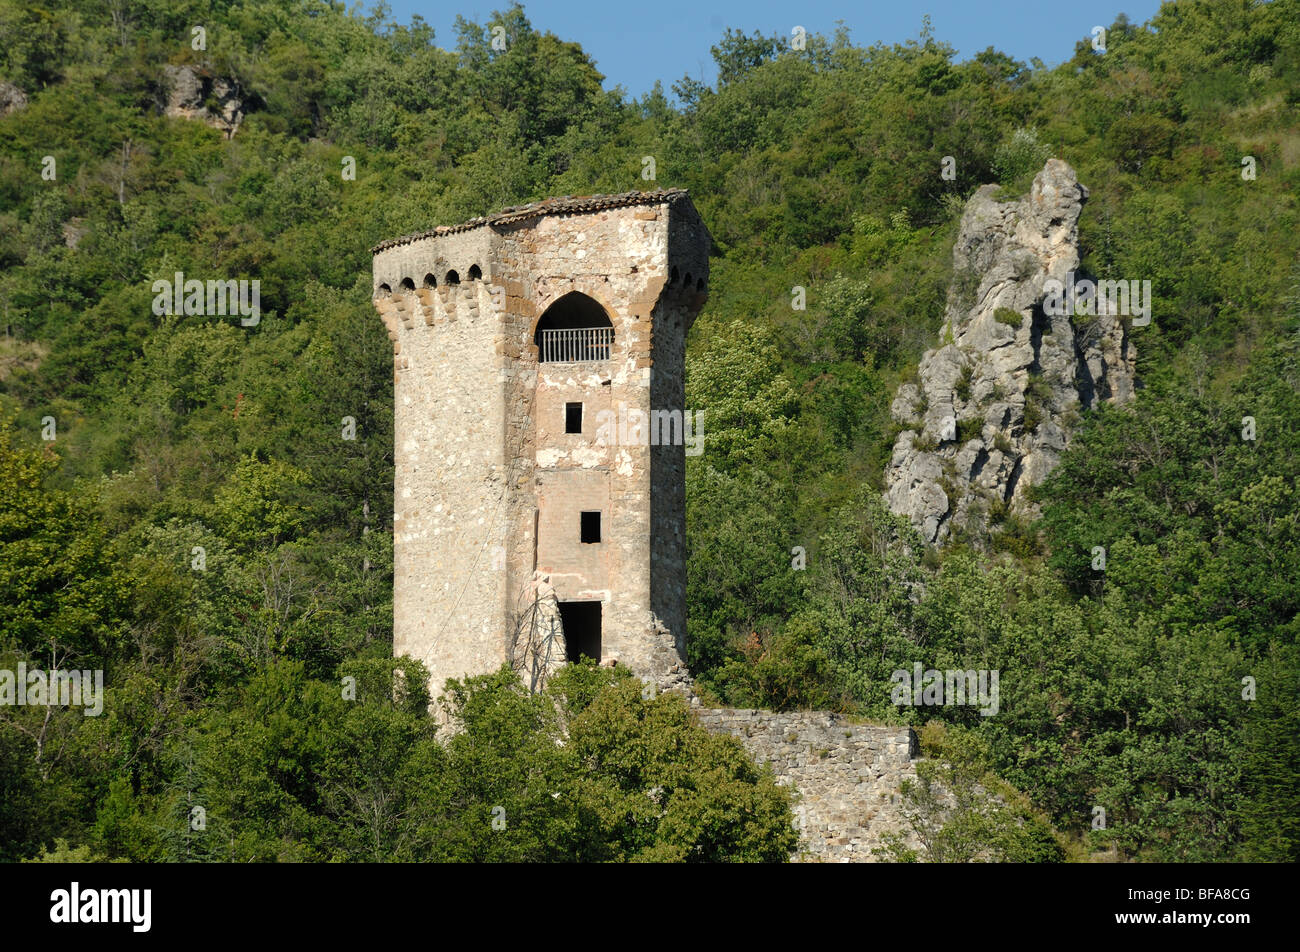 Mittelalterliche Verteidigung, Verteidigung oder Steinturm, Teil der alten Stadtmauer von Castellane, Verdon Park, Alpes-de-Haute-Provence Frankreich Stockfoto